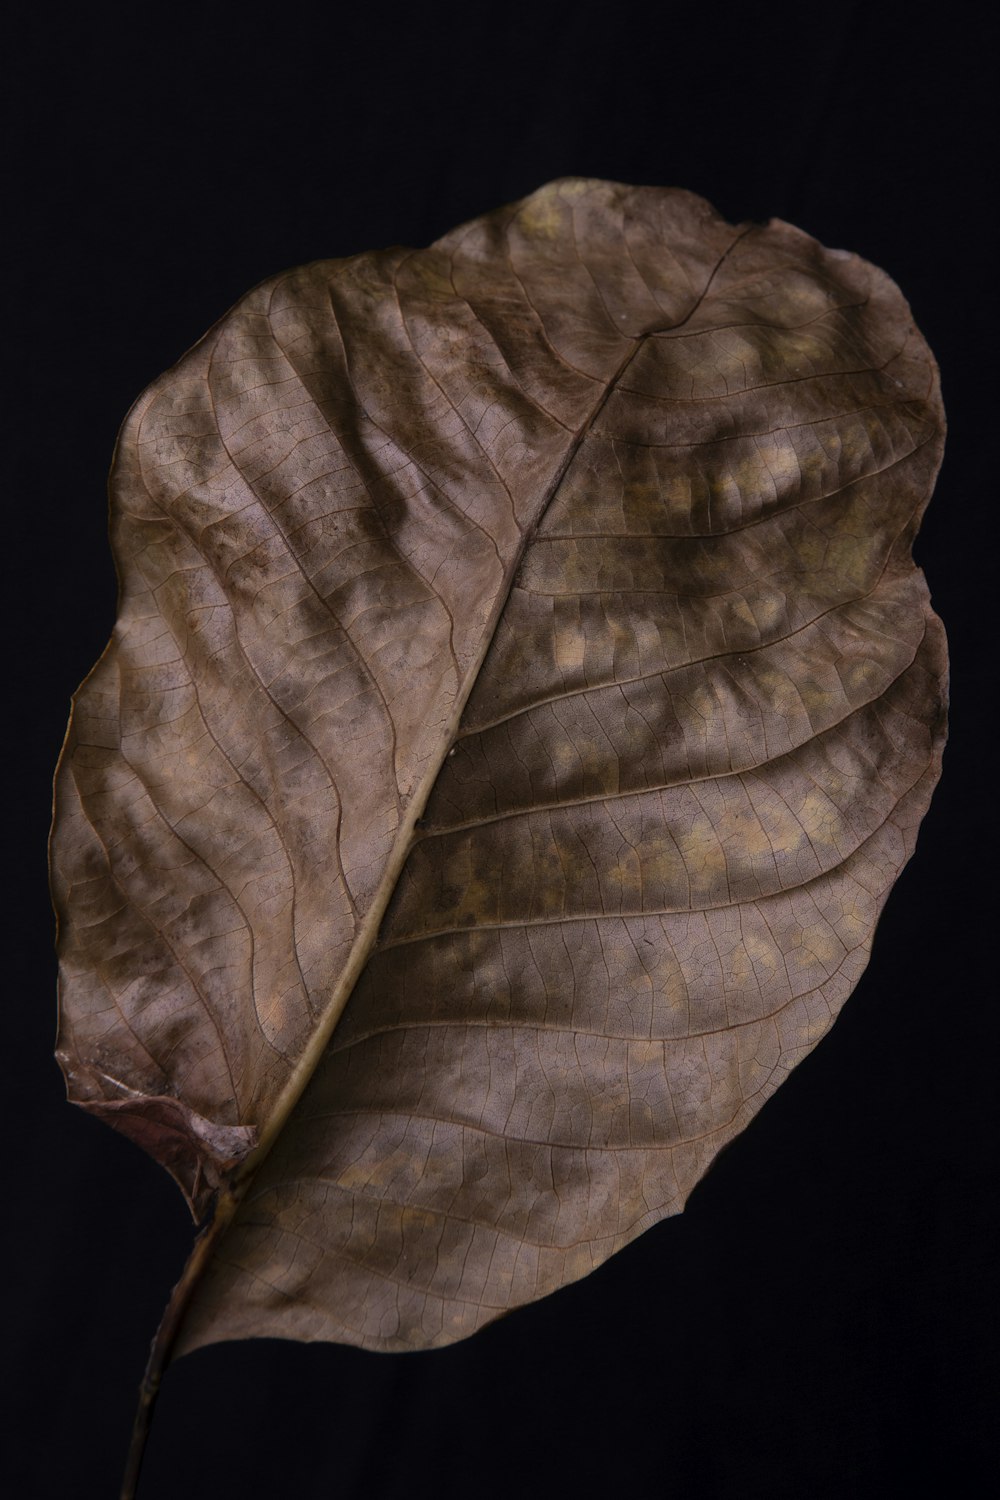 brown leaf on black background